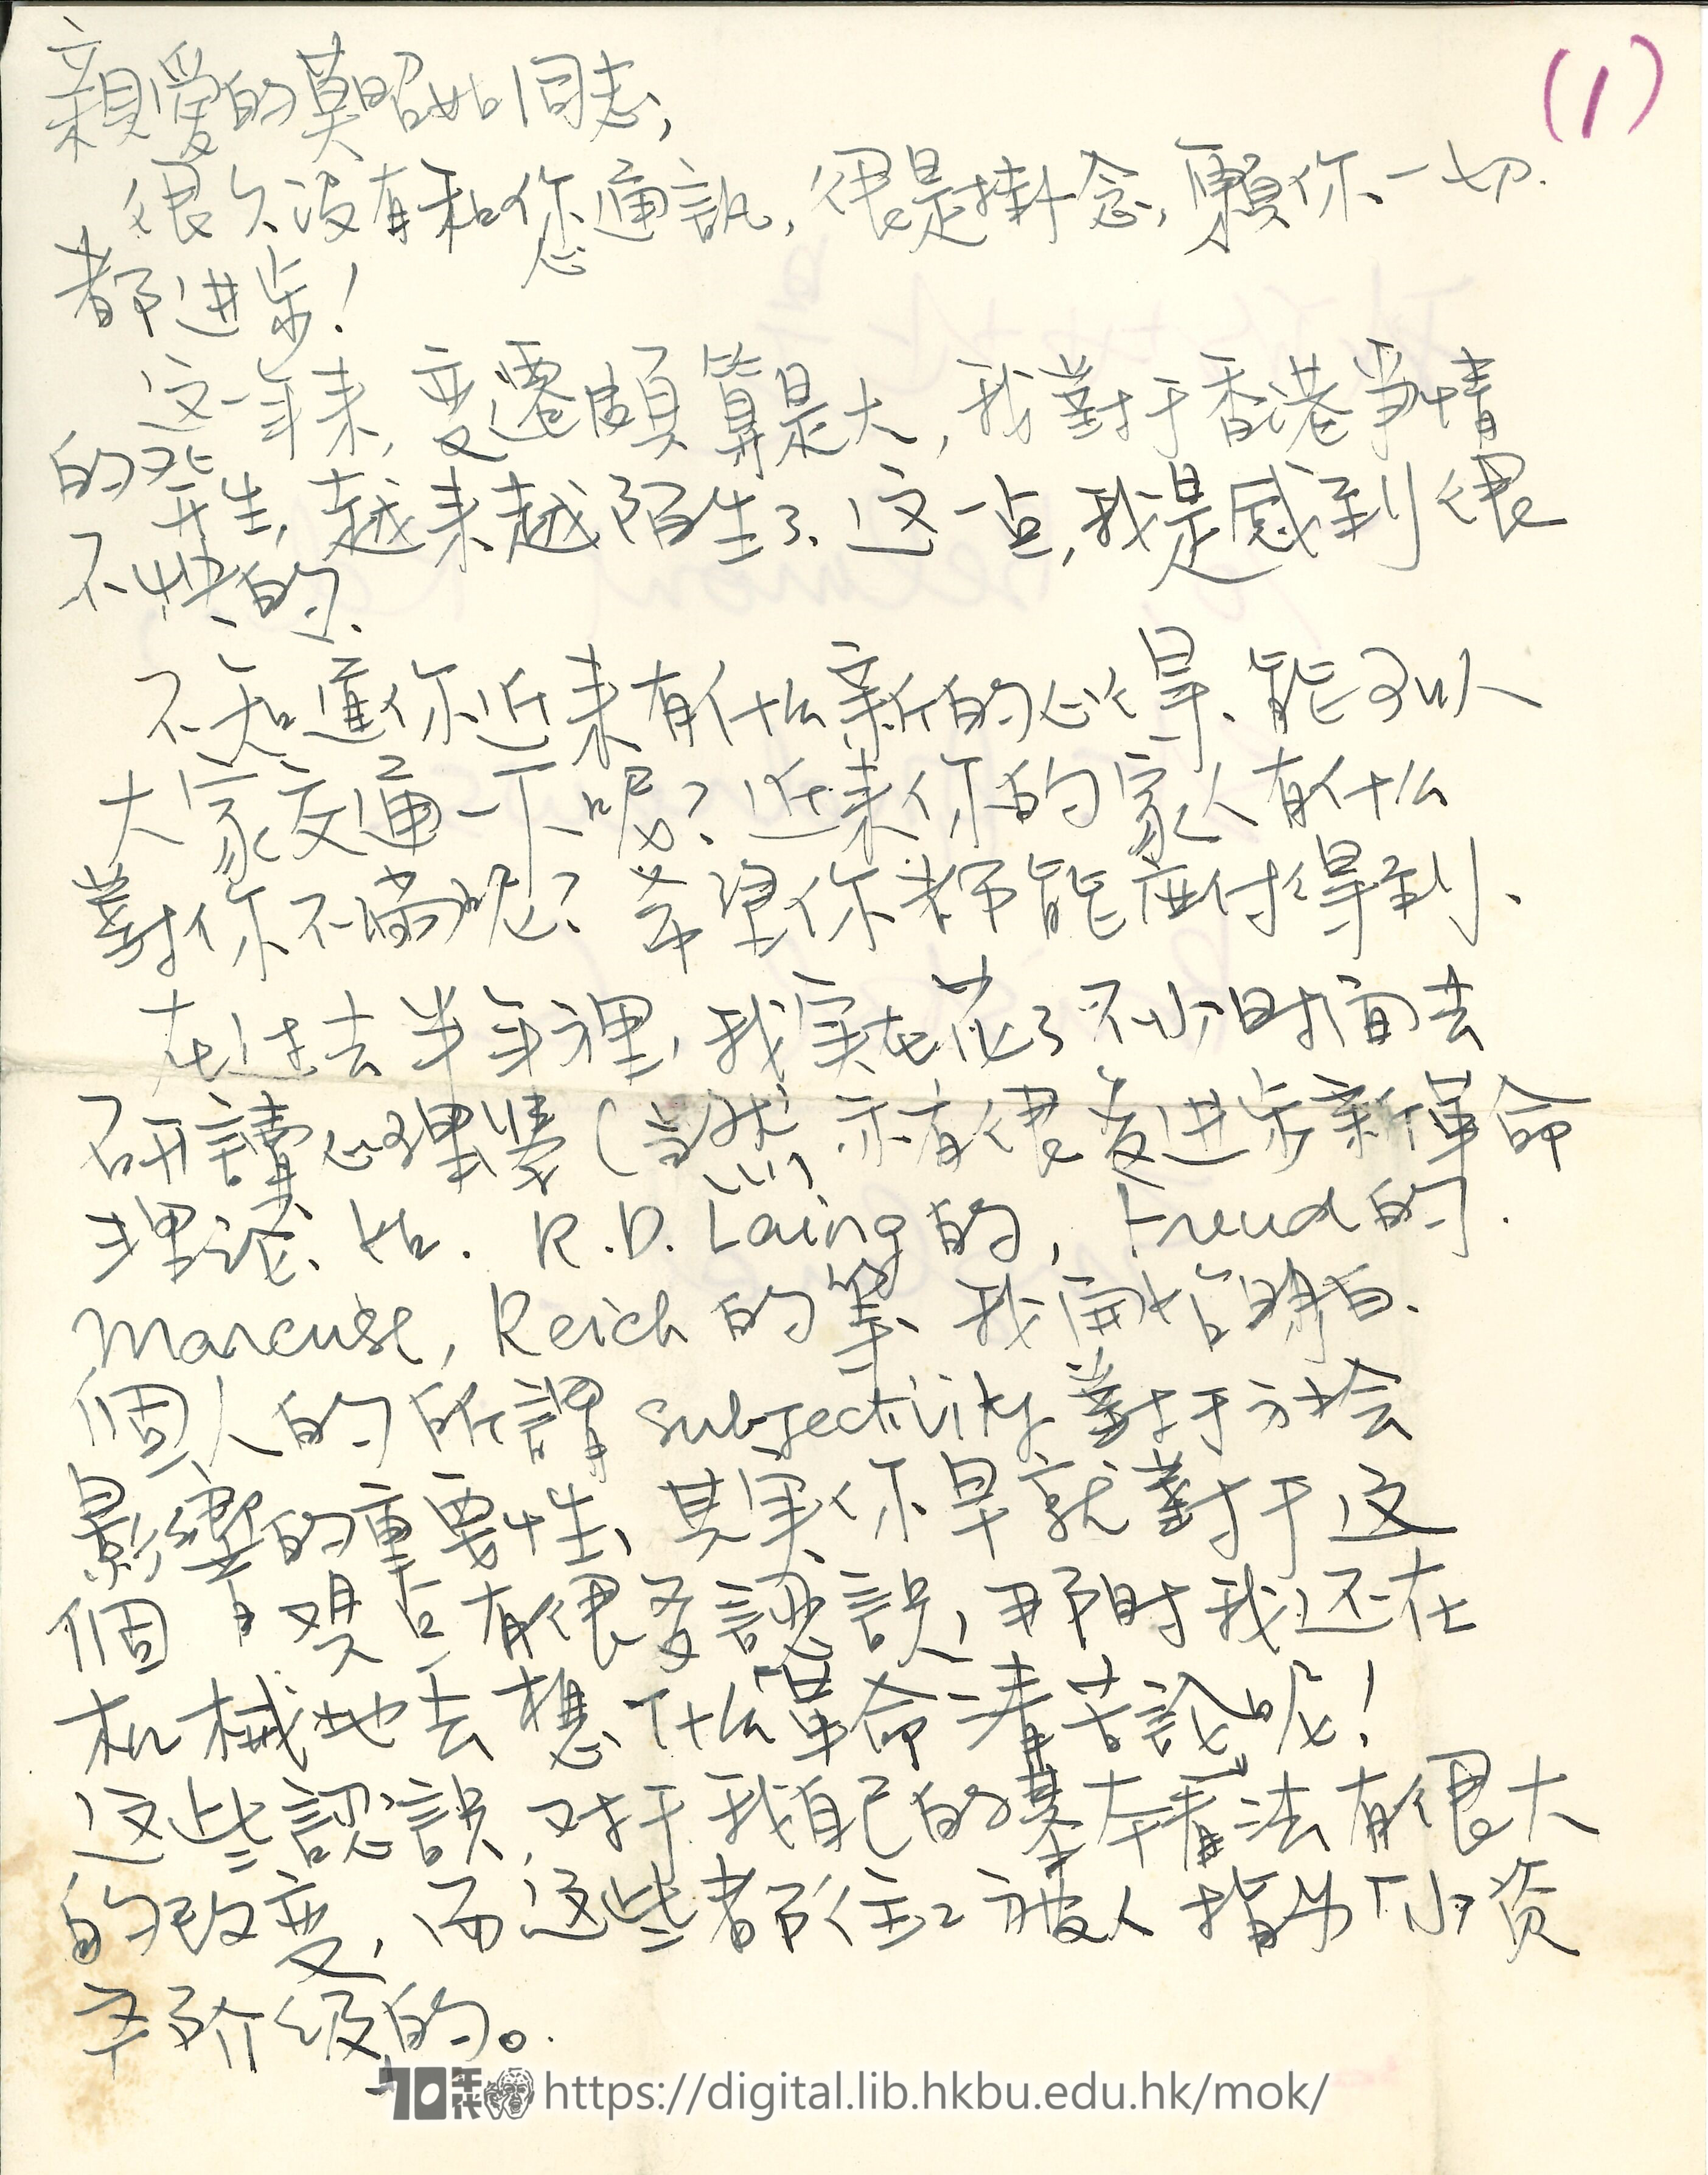   Letter from Ng Ka Lun to Mok Chiu Yu  